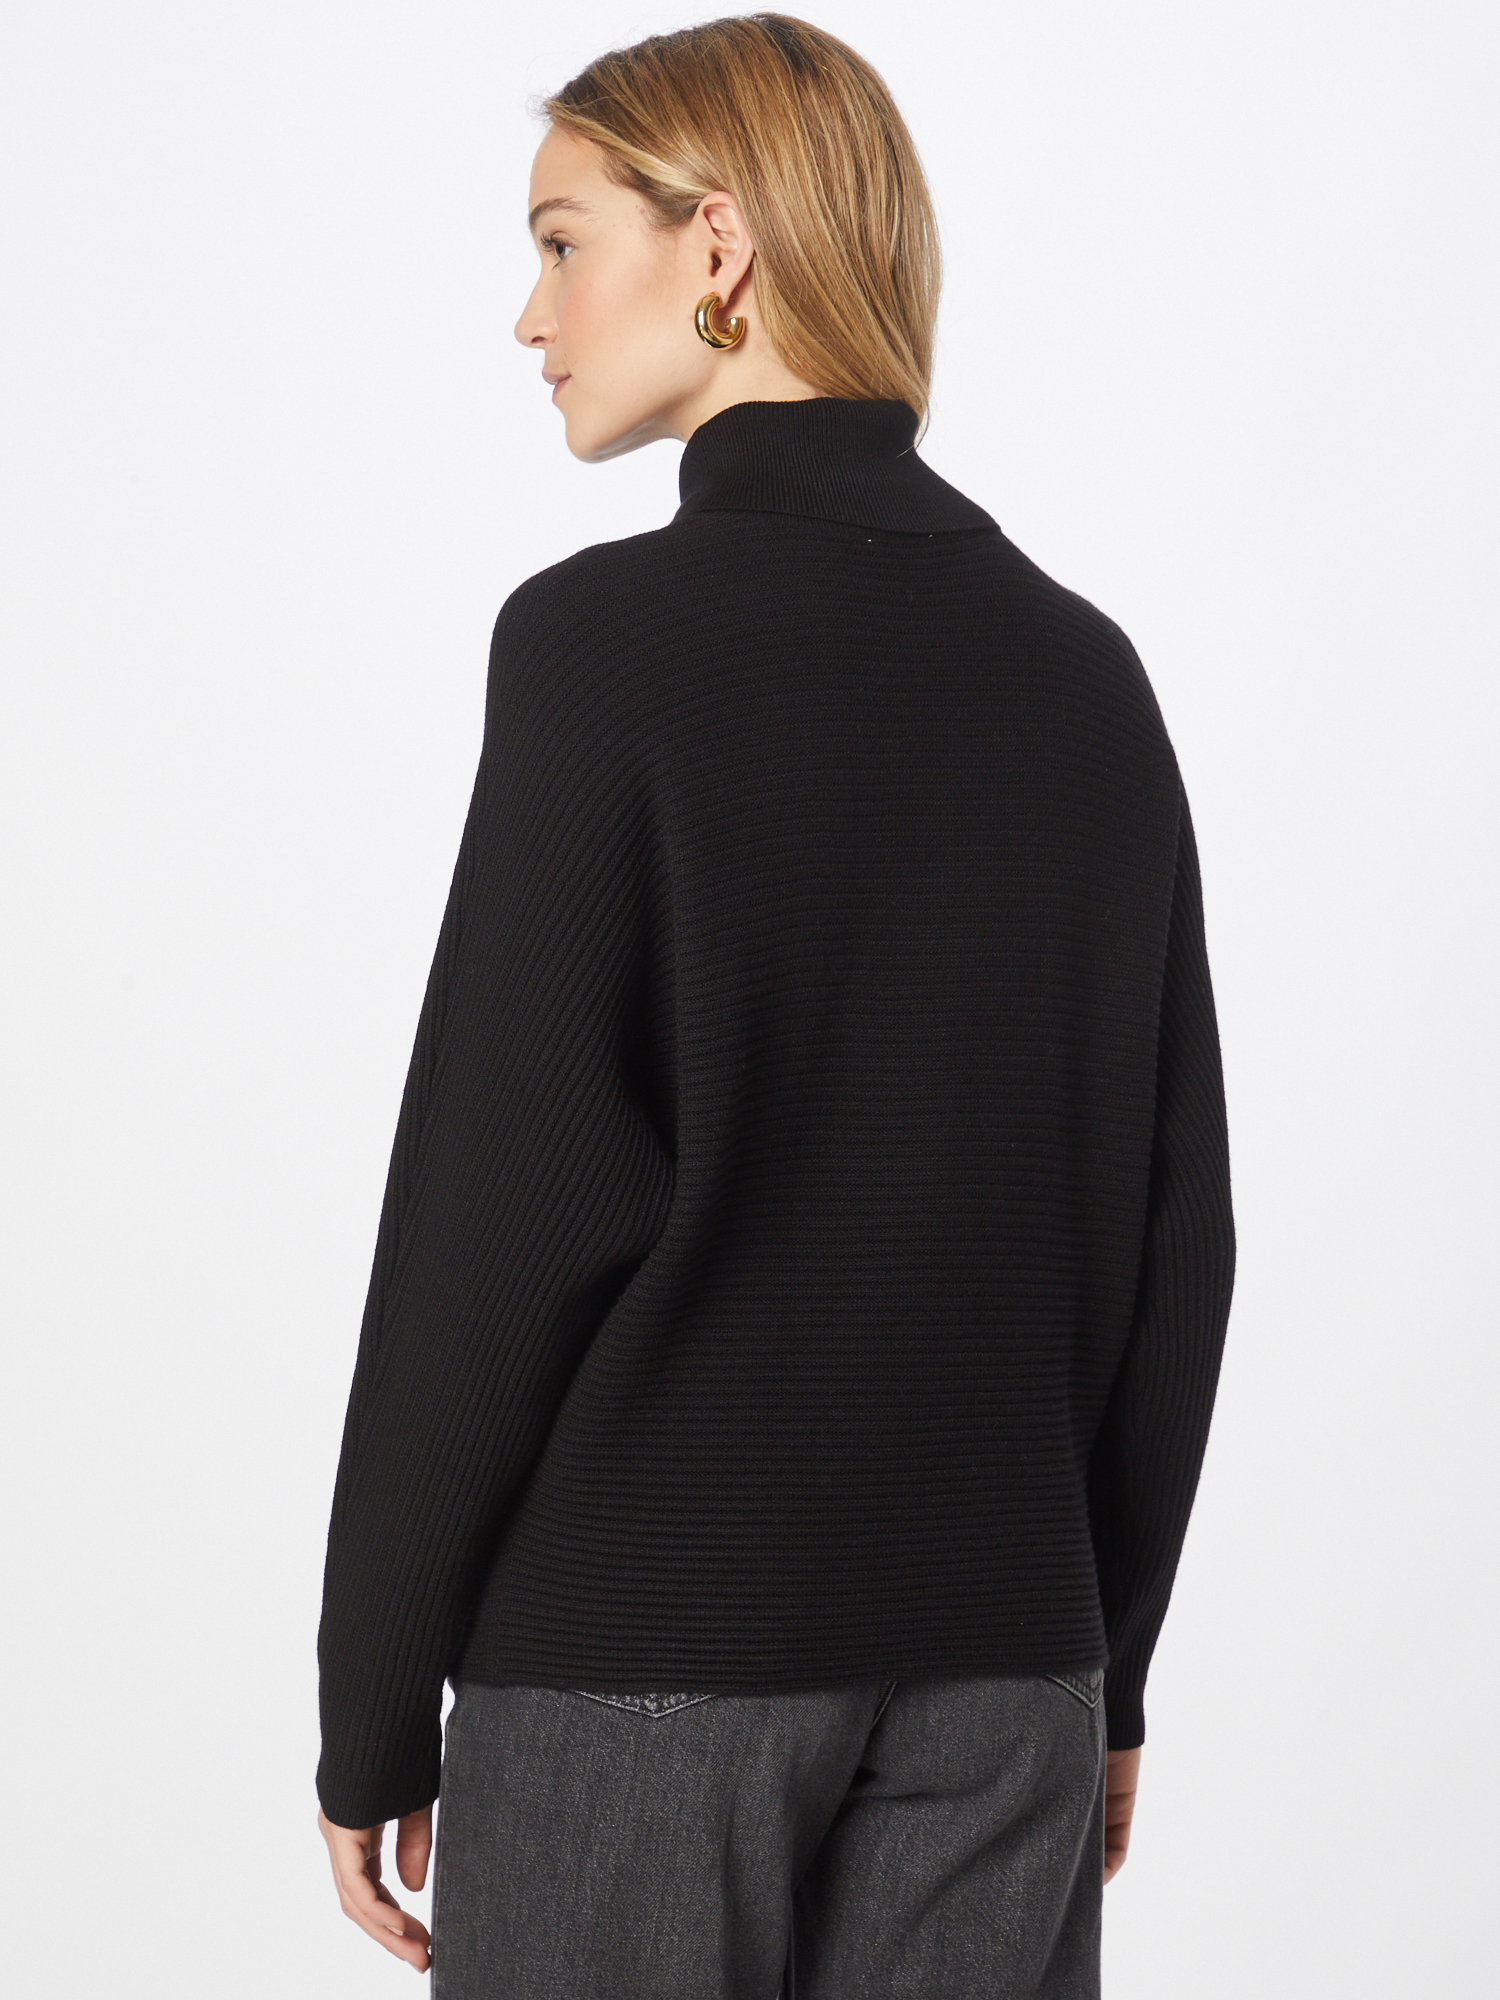 Swetry & dzianina Kobiety Orsay Sweter w kolorze Czarnym 